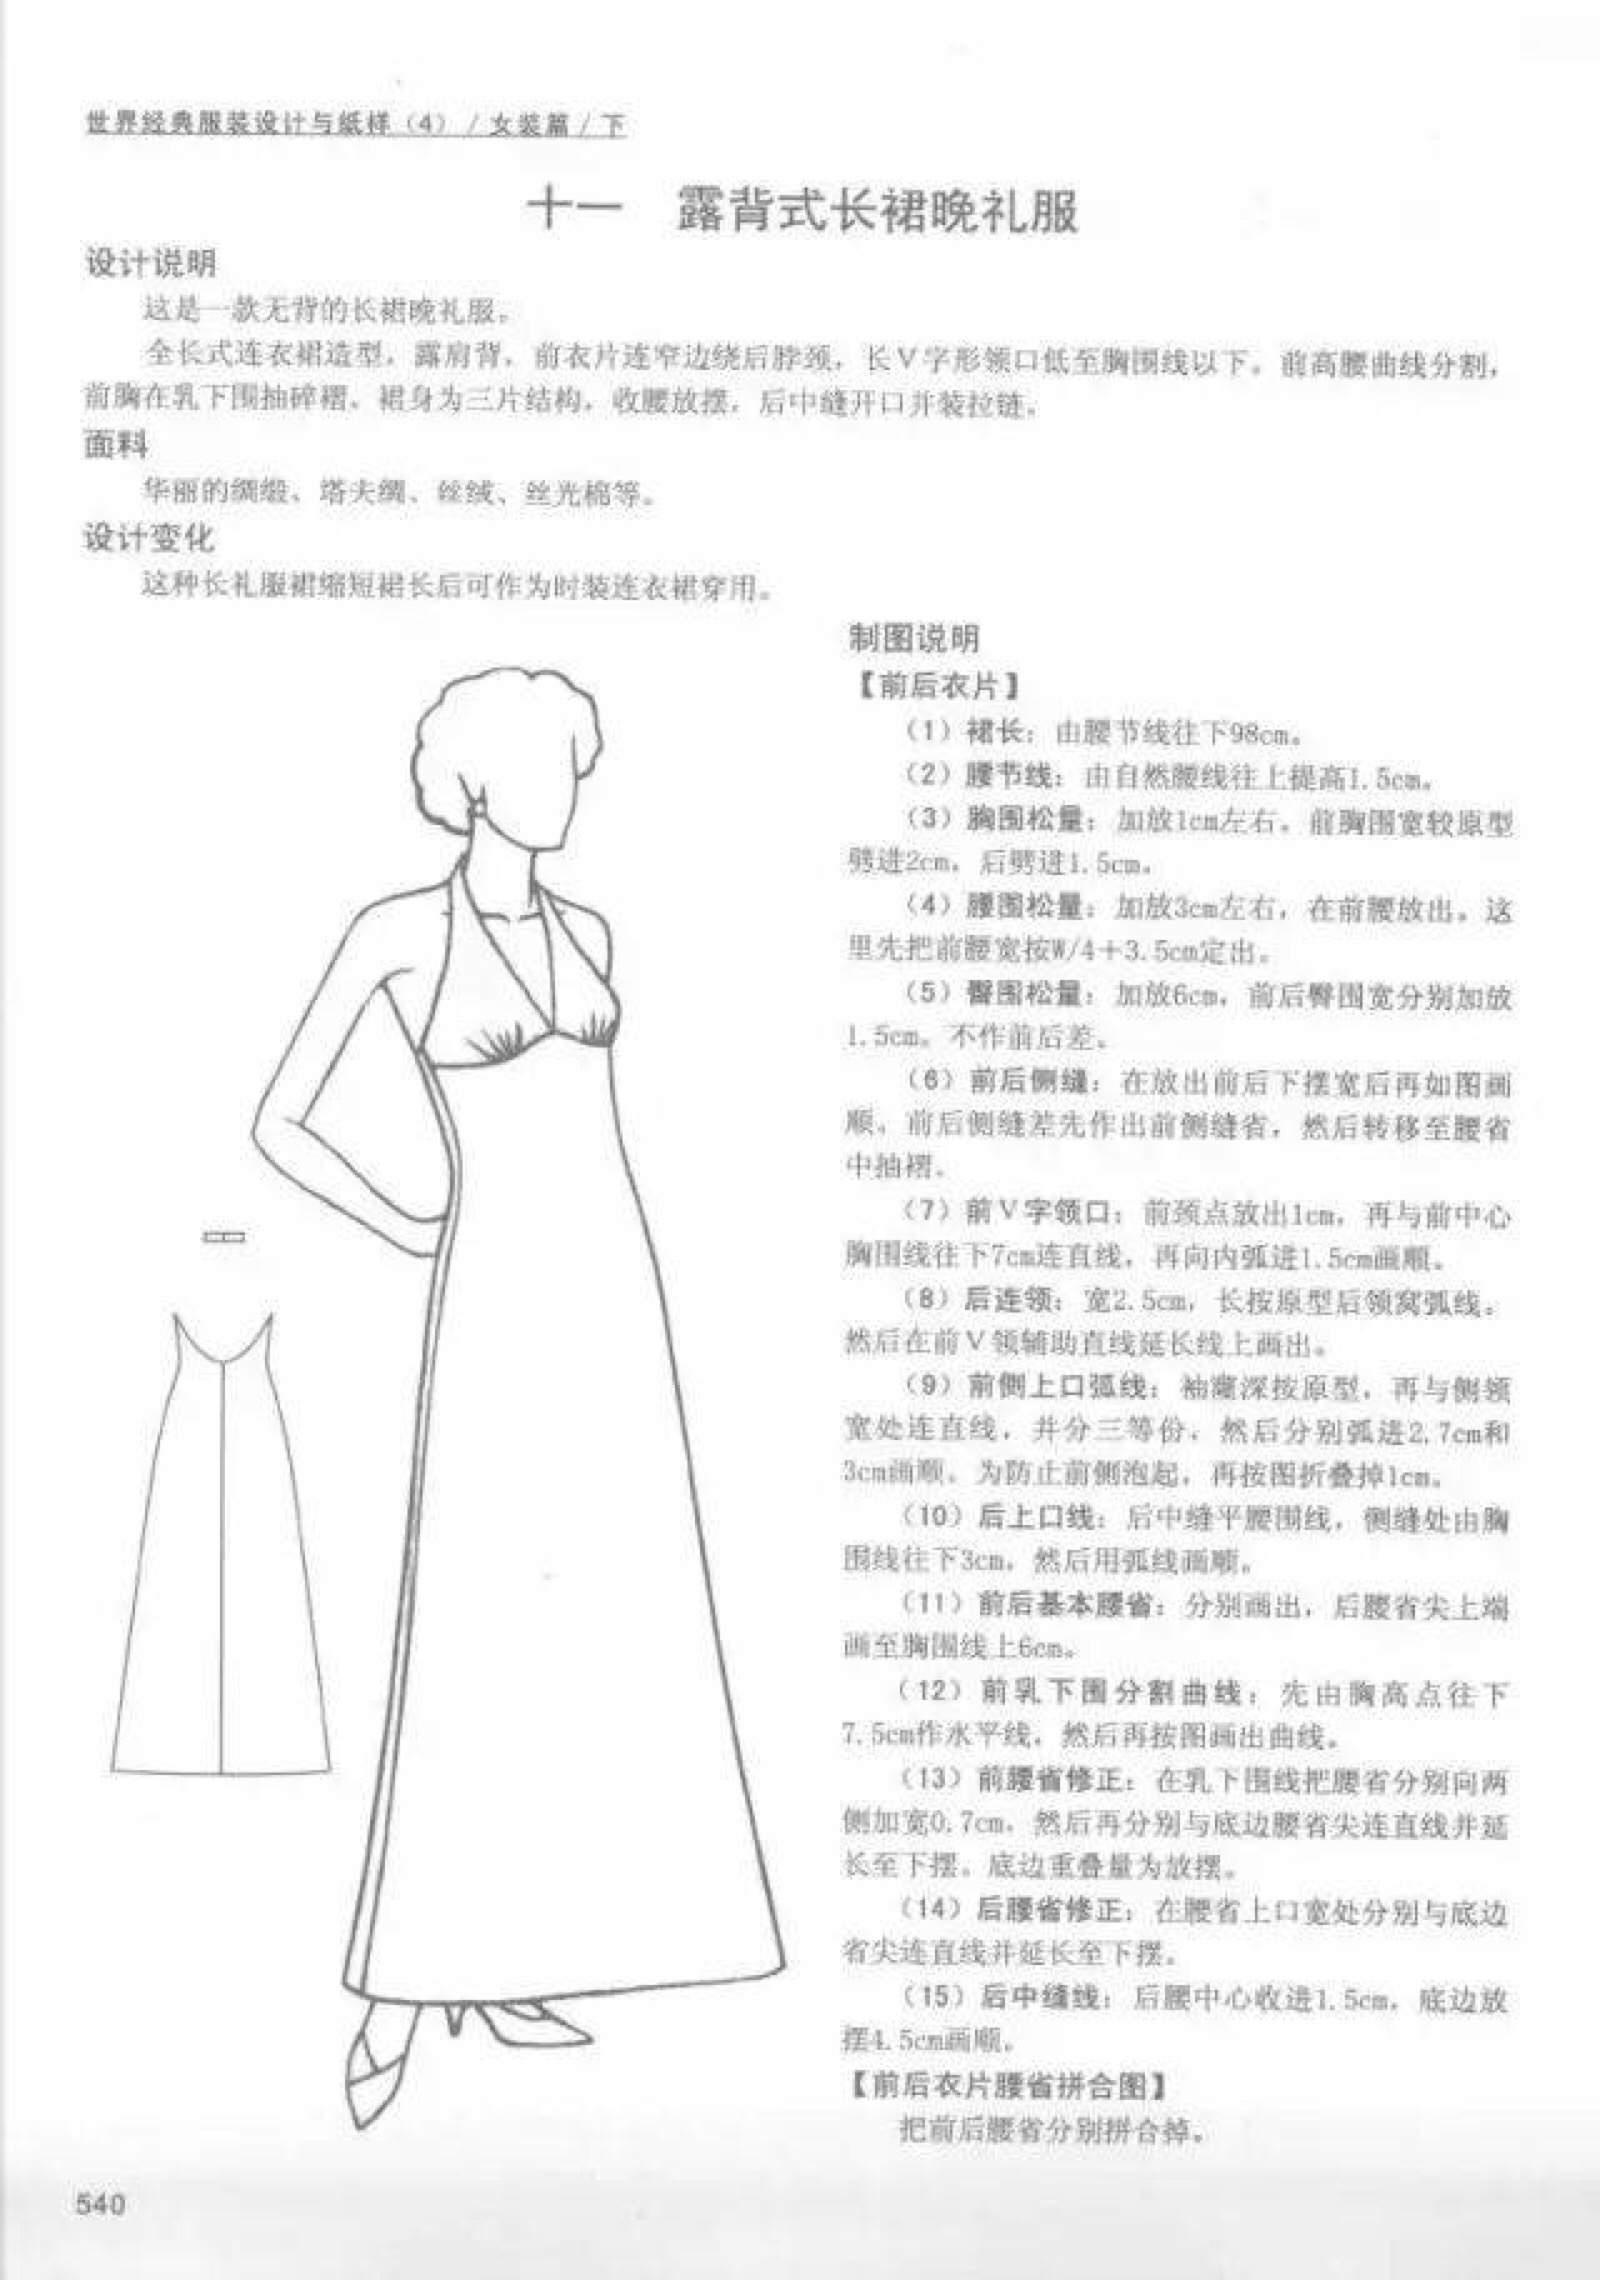 服装制版11款女士礼服(婚纱)的设计与制版纸样分享215